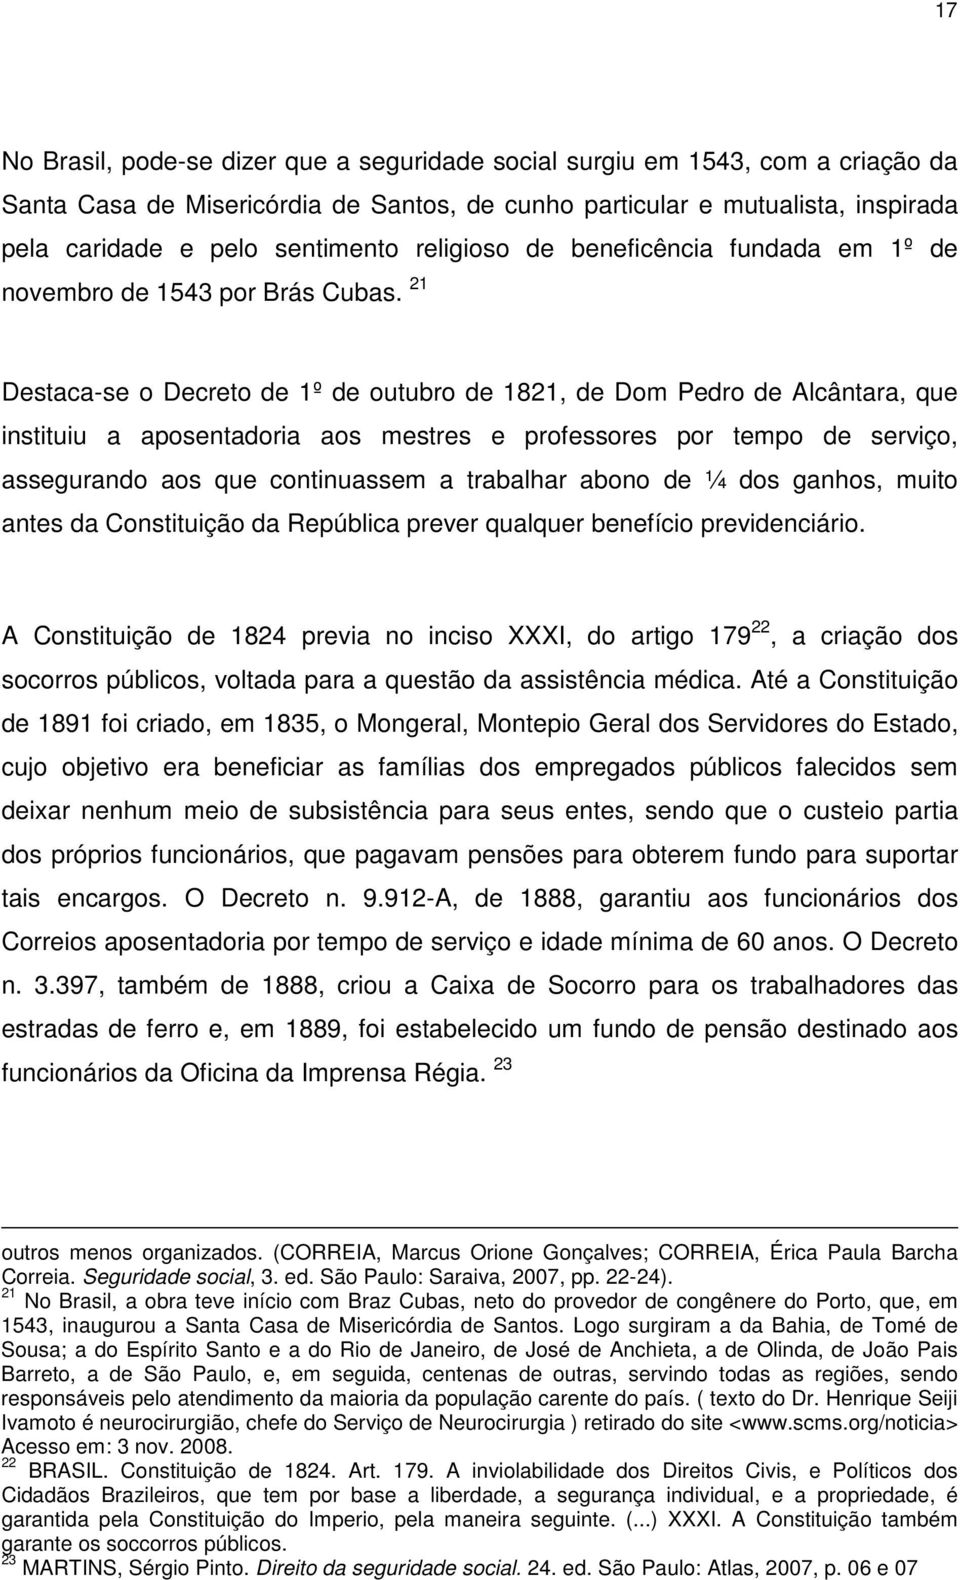 21 Destaca-se o Decreto de 1º de outubro de 1821, de Dom Pedro de Alcântara, que instituiu a aposentadoria aos mestres e professores por tempo de serviço, assegurando aos que continuassem a trabalhar